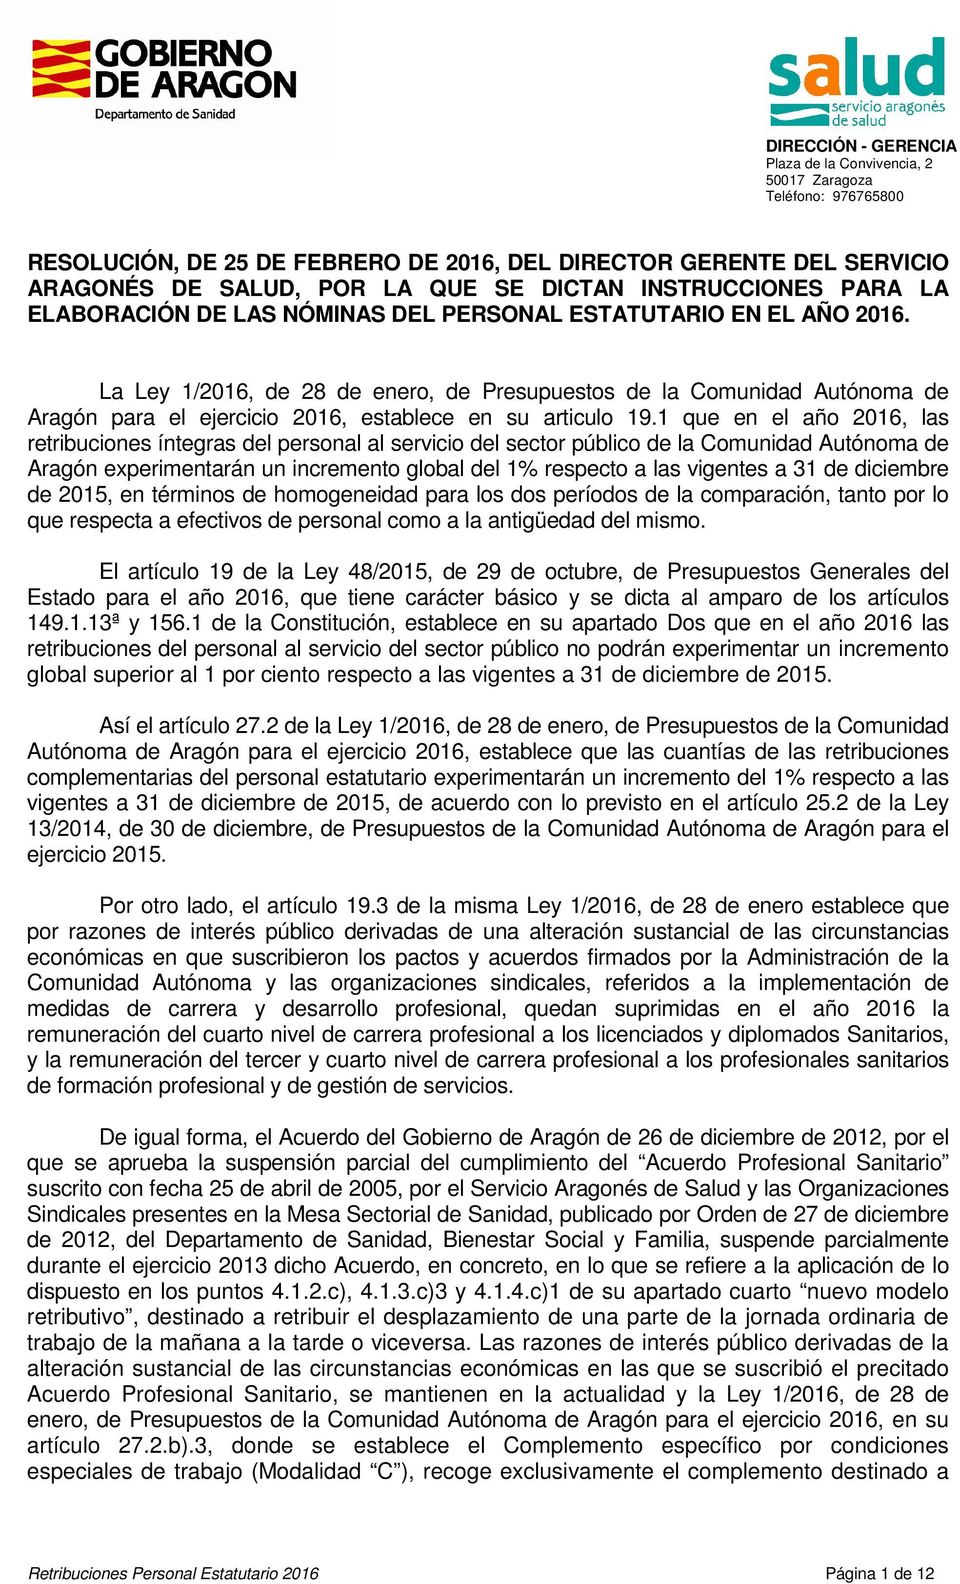 La Ley 1/2016, de 28 de enero, de Presupuestos de la Comunidad Autónoma de Aragón para el ejercicio 2016, establece en su articulo 19.